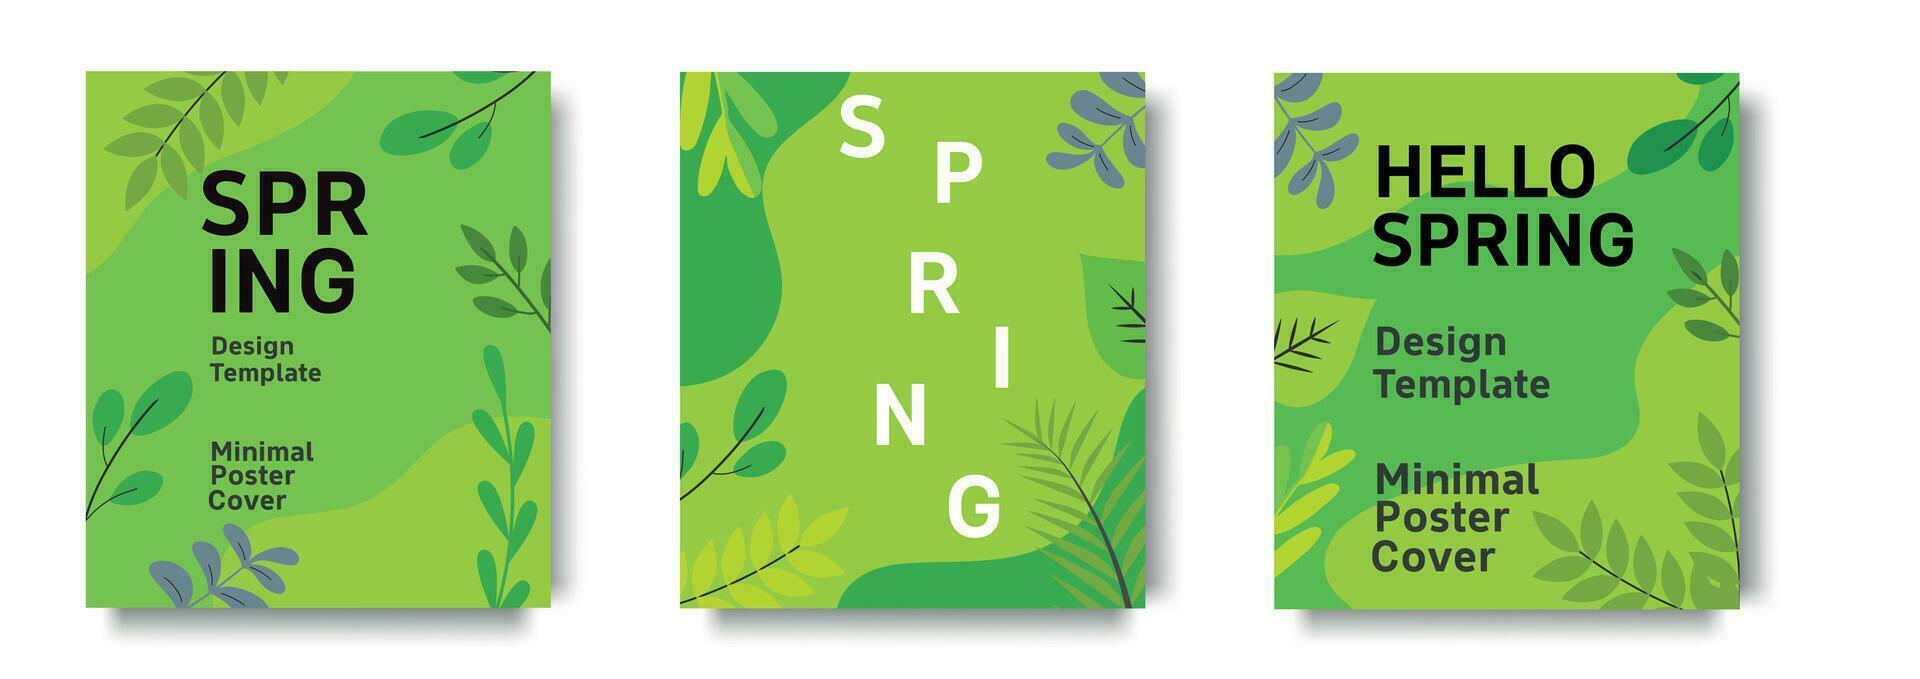 Frühling abstrakt Sozial Medien Geschichten Design Vorlagen. Frühling Hintergrund, Abdeckung, Verkauf Banner, Flyer Design. Vorlage zum Werbung, Netz, Sozial Medien. vektor